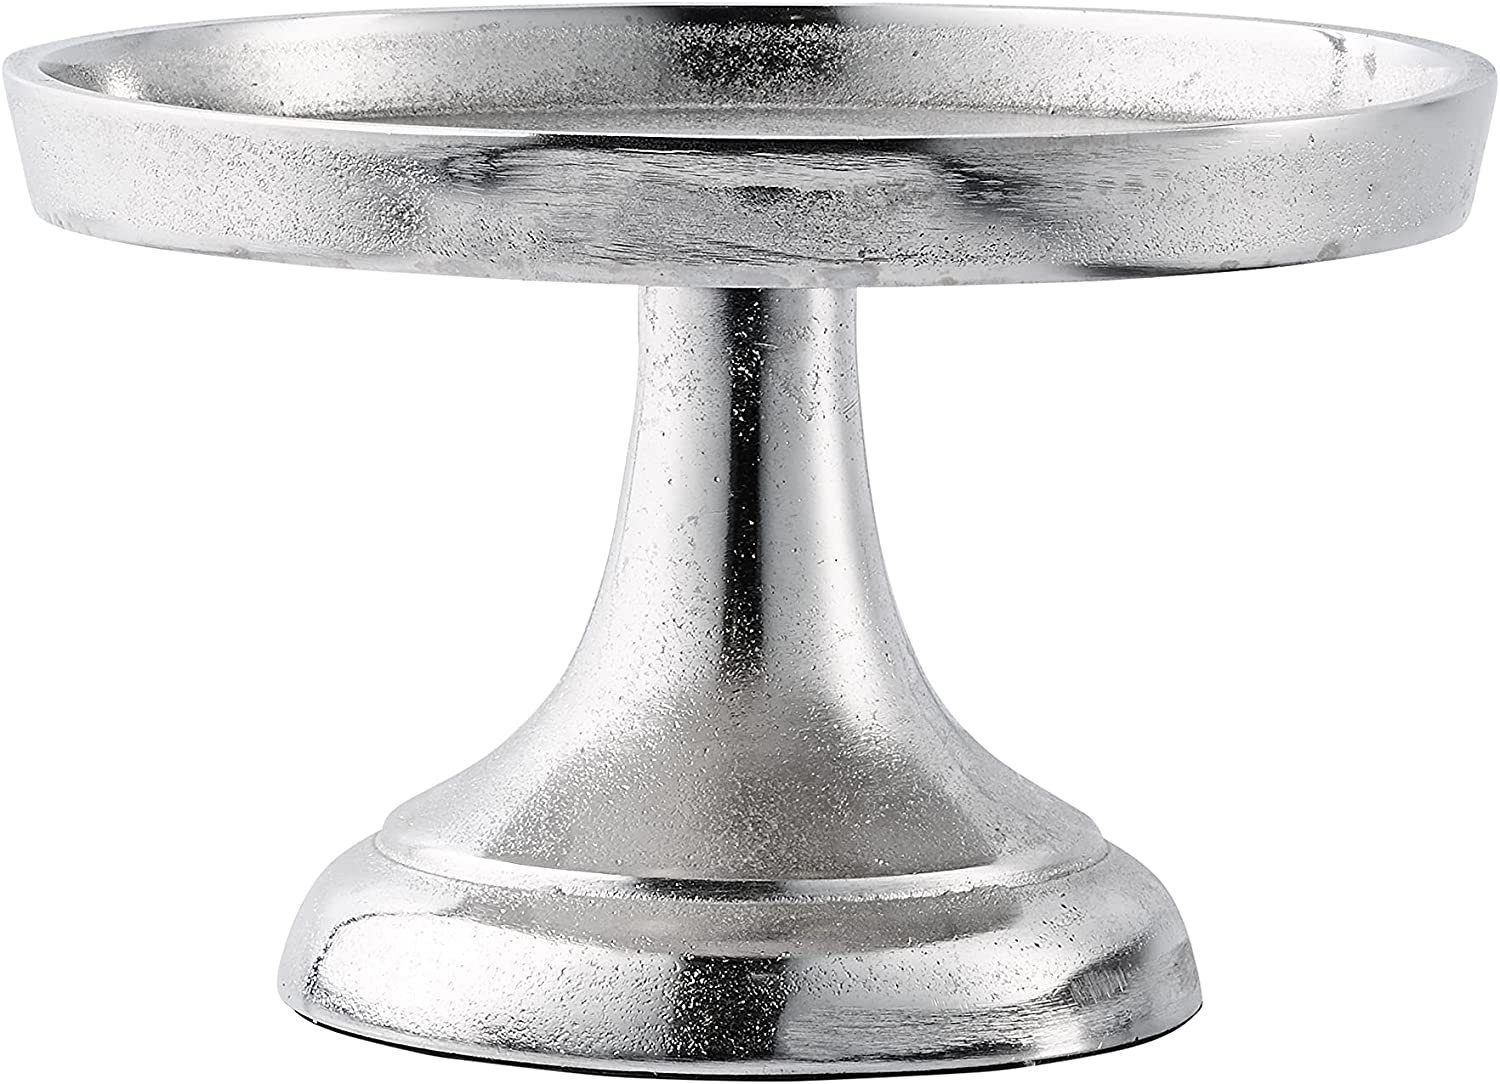 Luxus, cm 19,5 Etagere, S Aluminium Deko Metall Schale Tischdeko Silber Dekoschale Servierplatte MichaelNoll Dekoration Modern Dekoteller Dekoschale